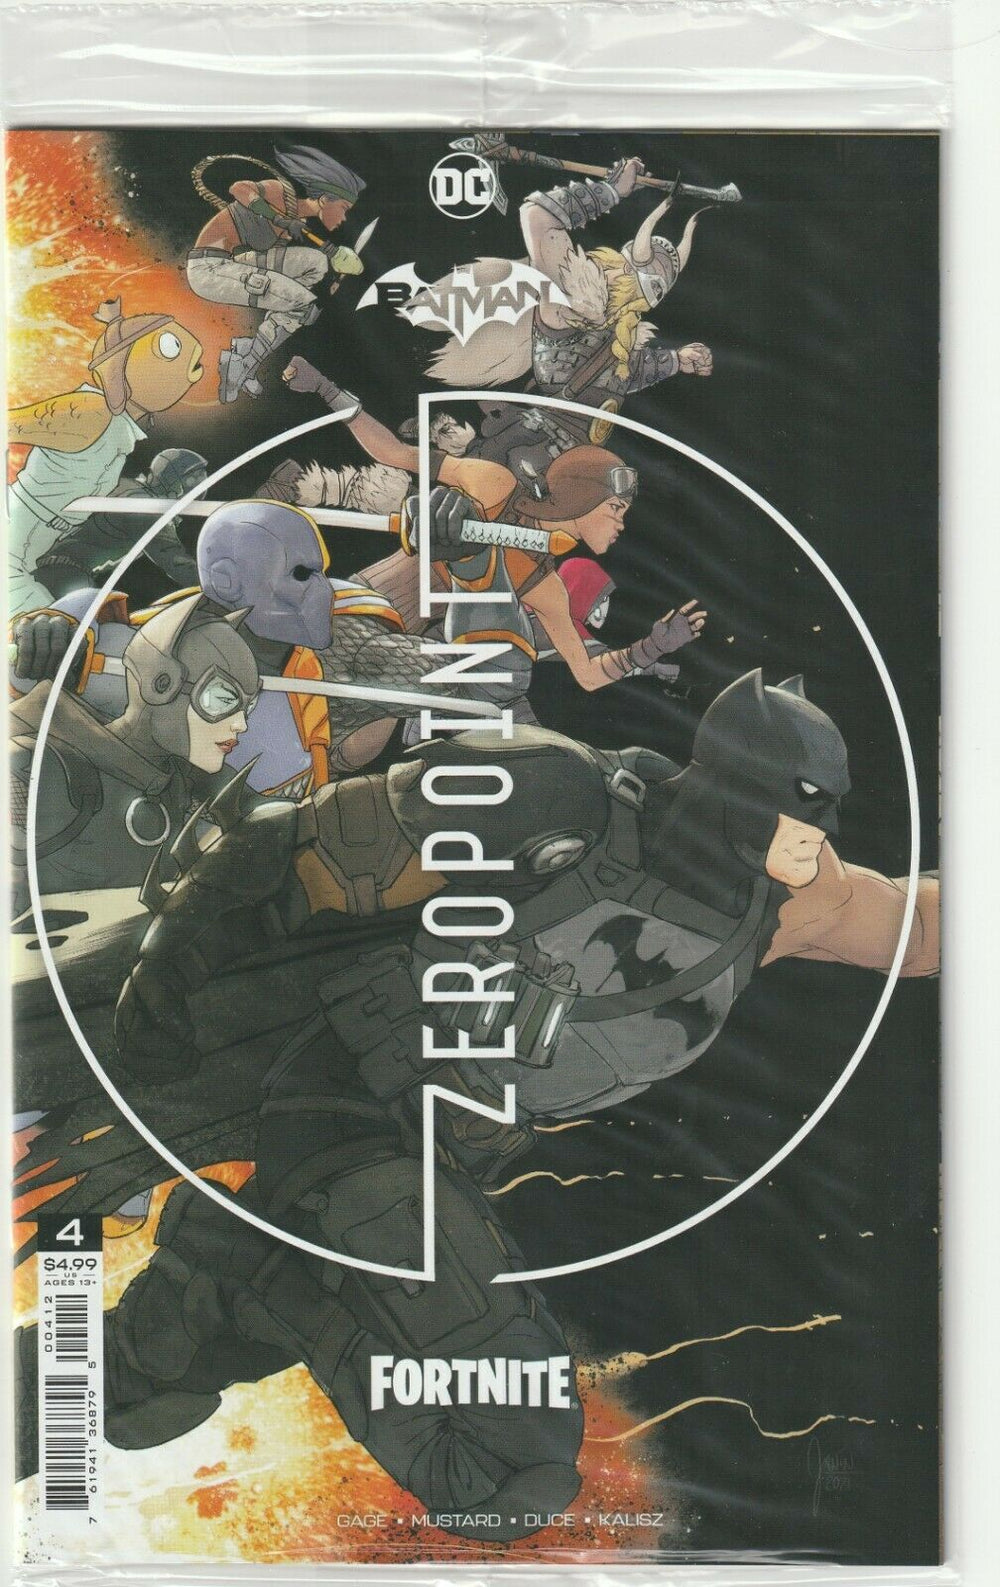 Batman Fortnite Zero Point # 4 Variant Cover 2nd Print